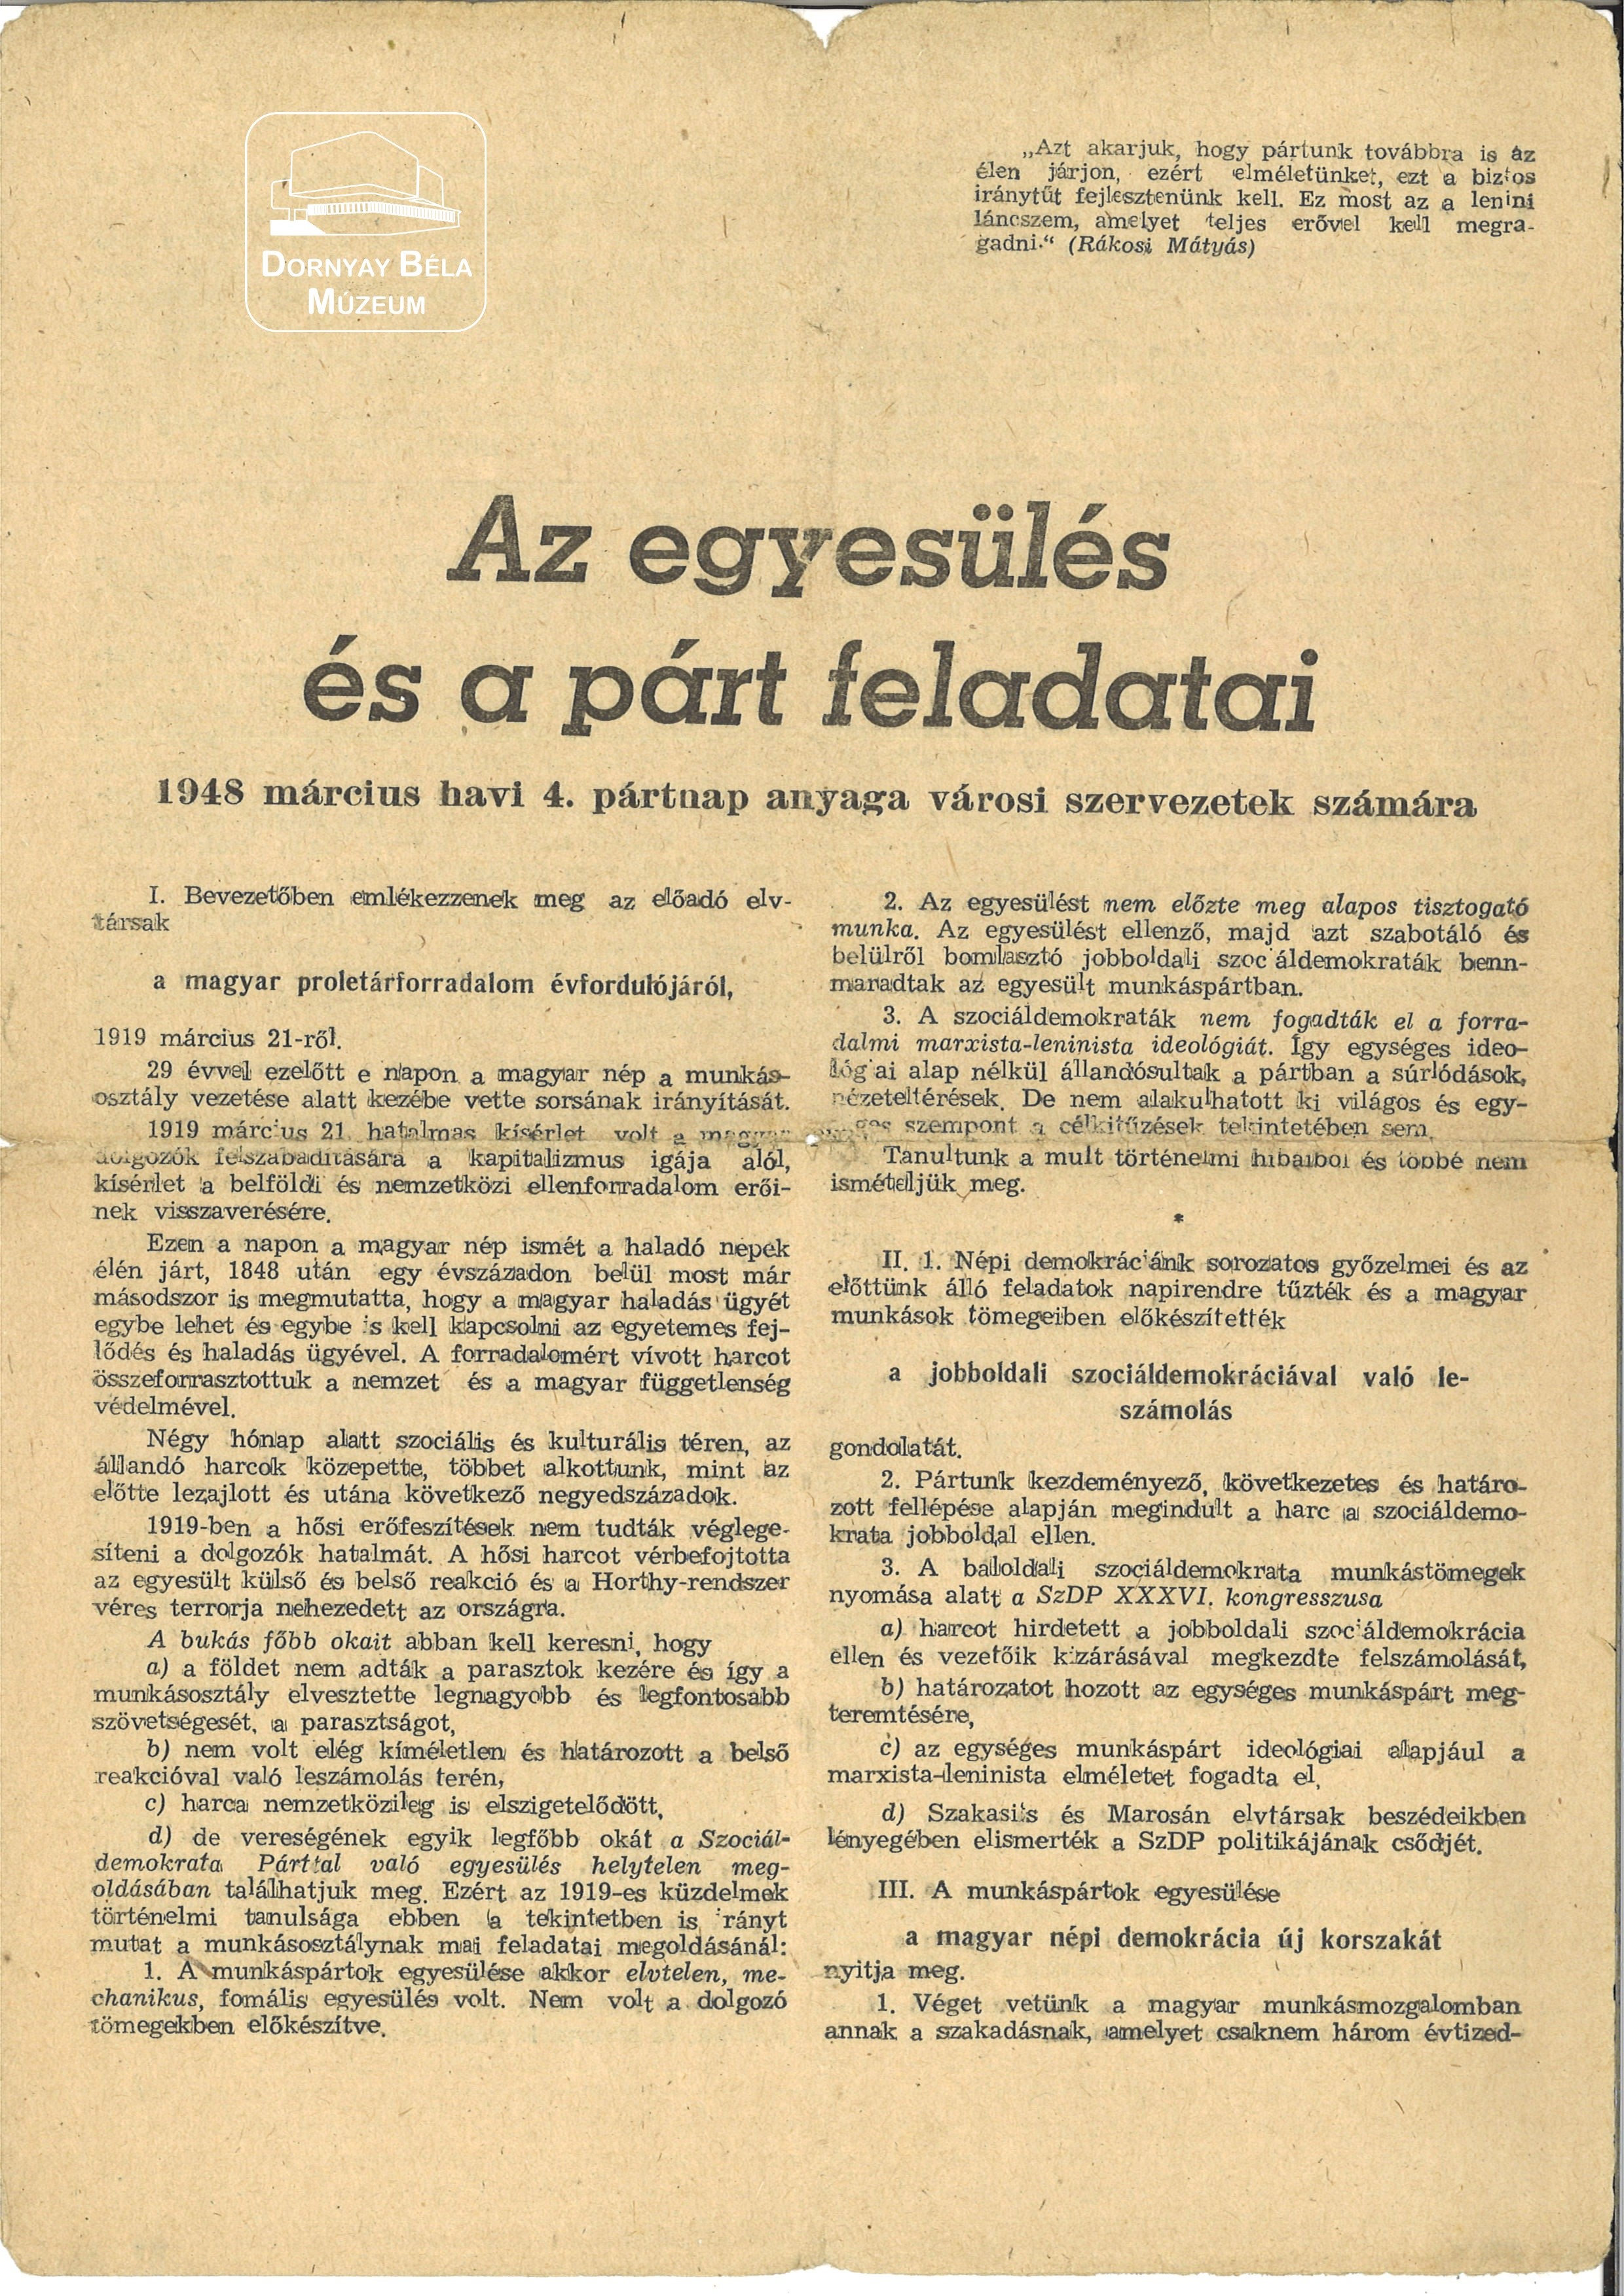 Az egyesülés és a párt feladatai 1948. március havi 4. pártnap anyaga városi szervezetek számára. (Dornyay Béla Múzeum, Salgótarján CC BY-NC-SA)